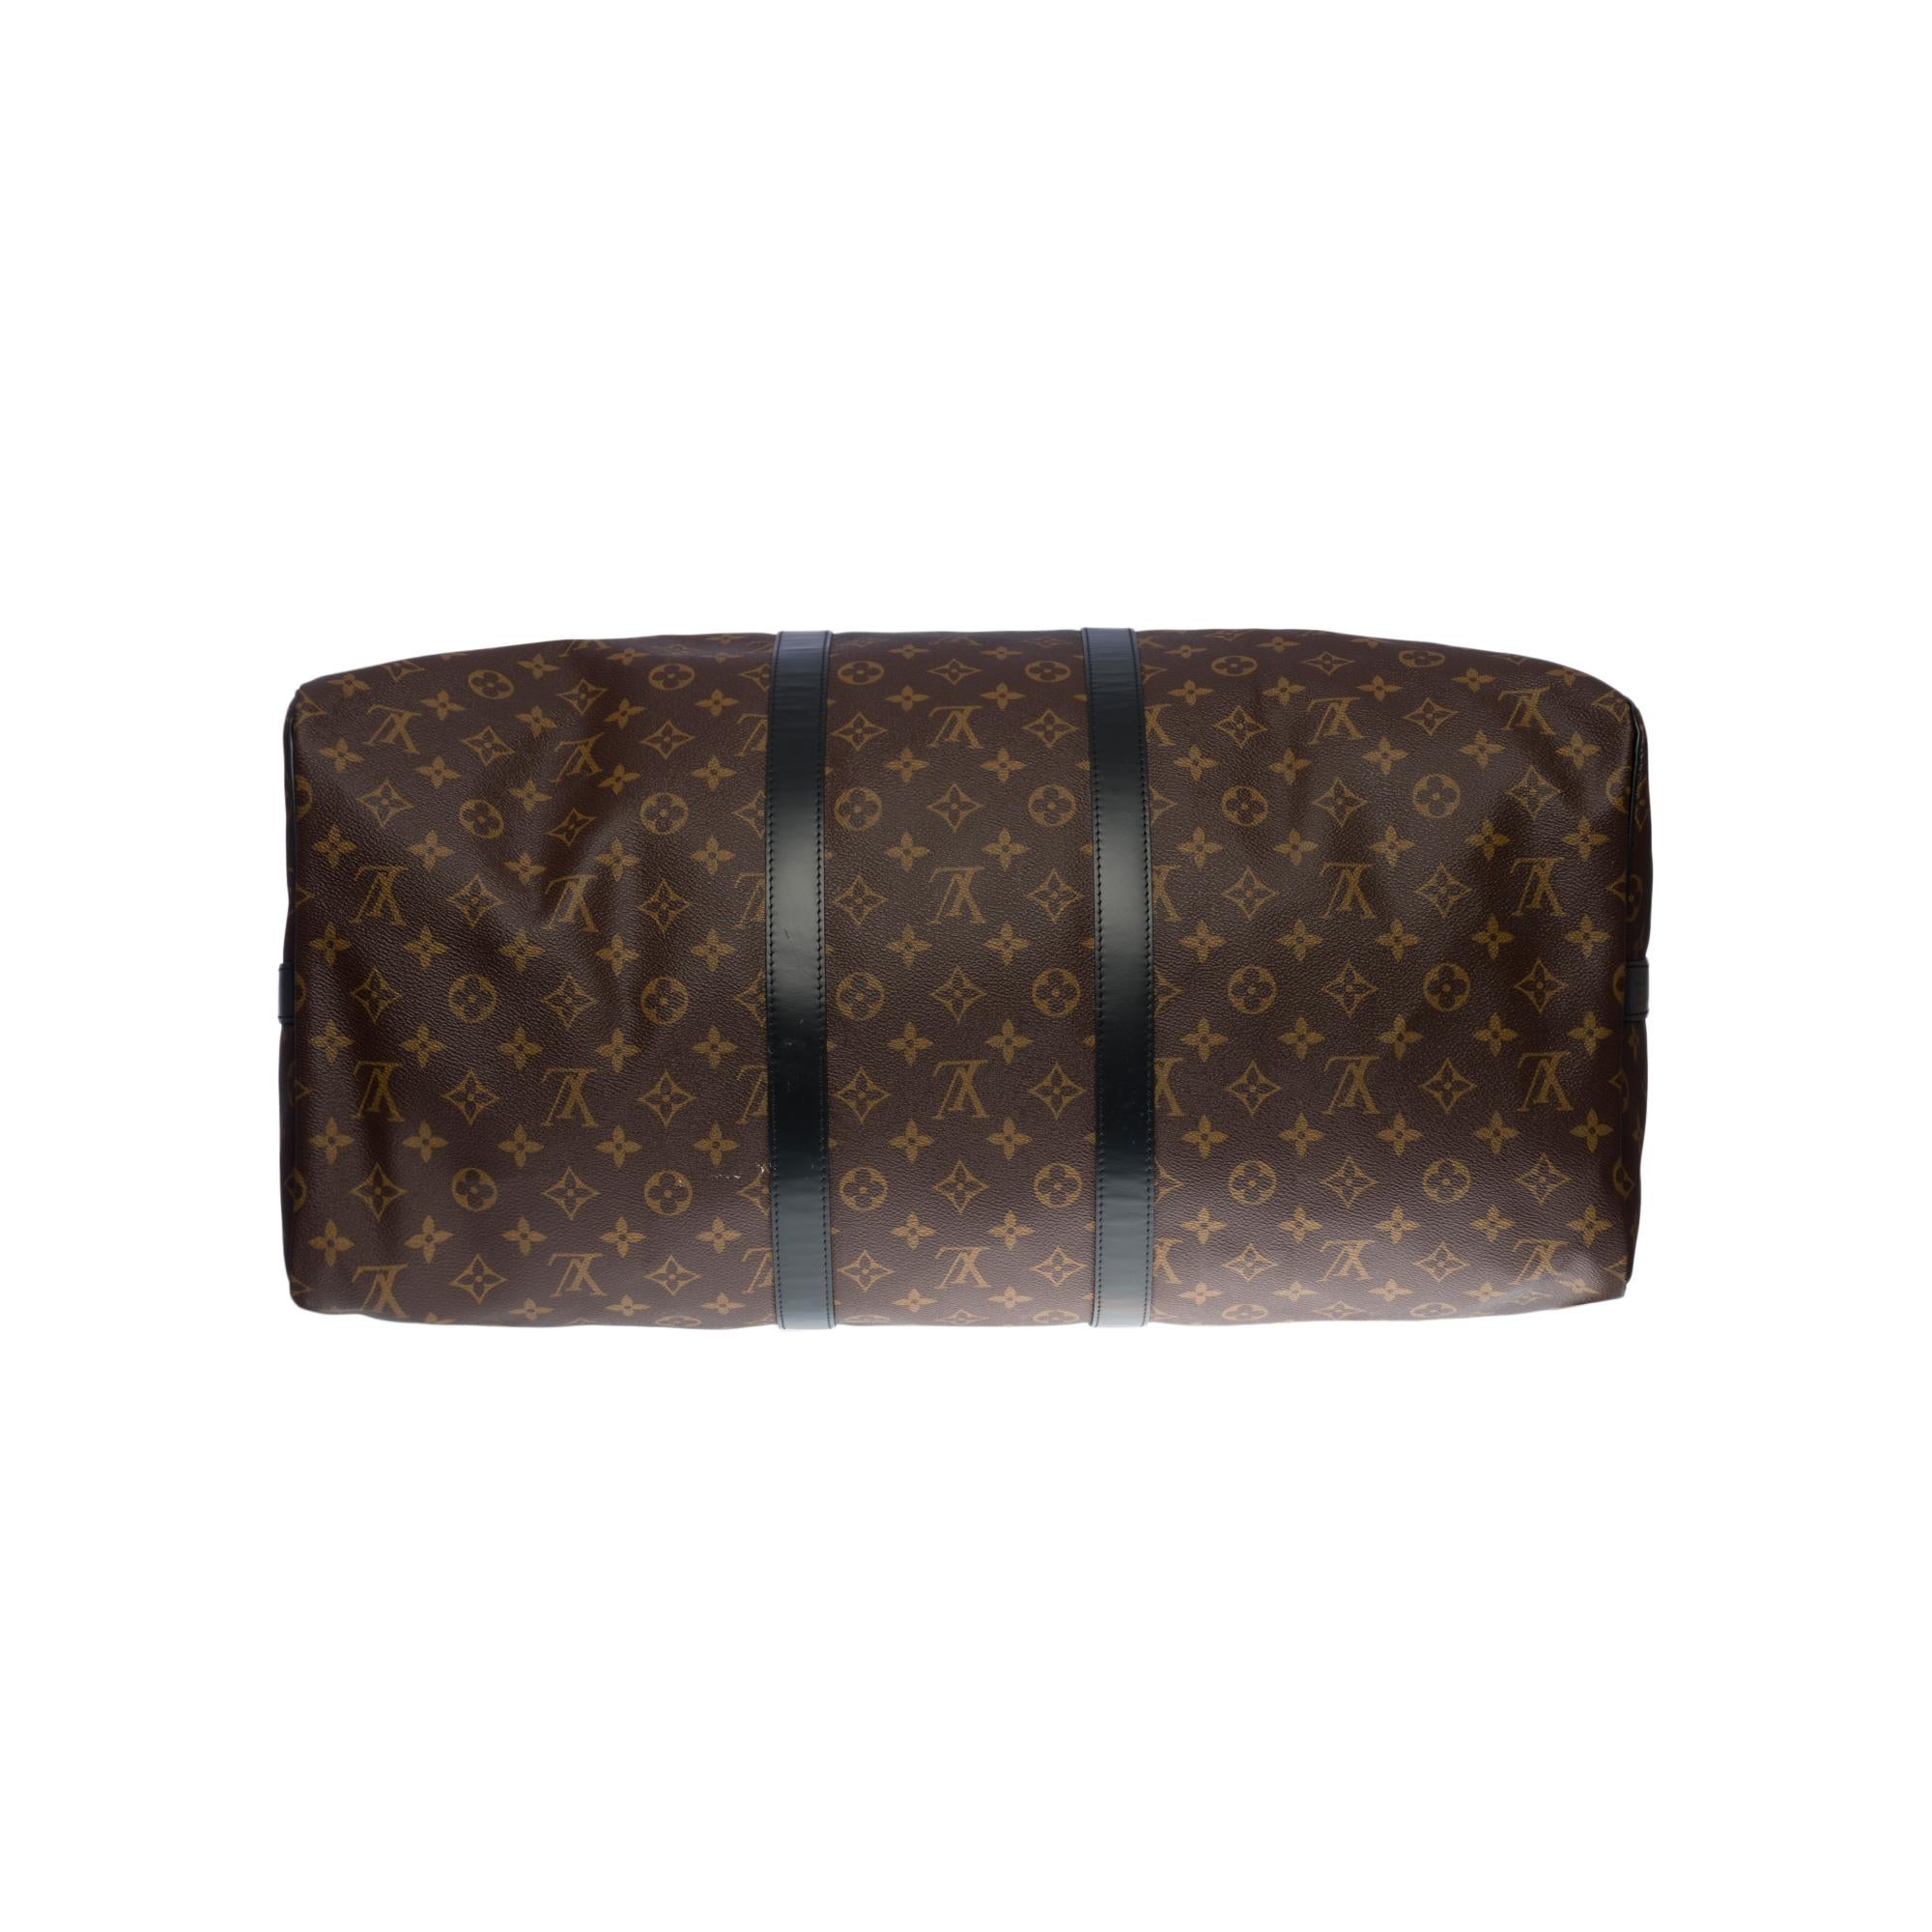 New Customized Louis Vuitton Keepall 55 Macassar strap 